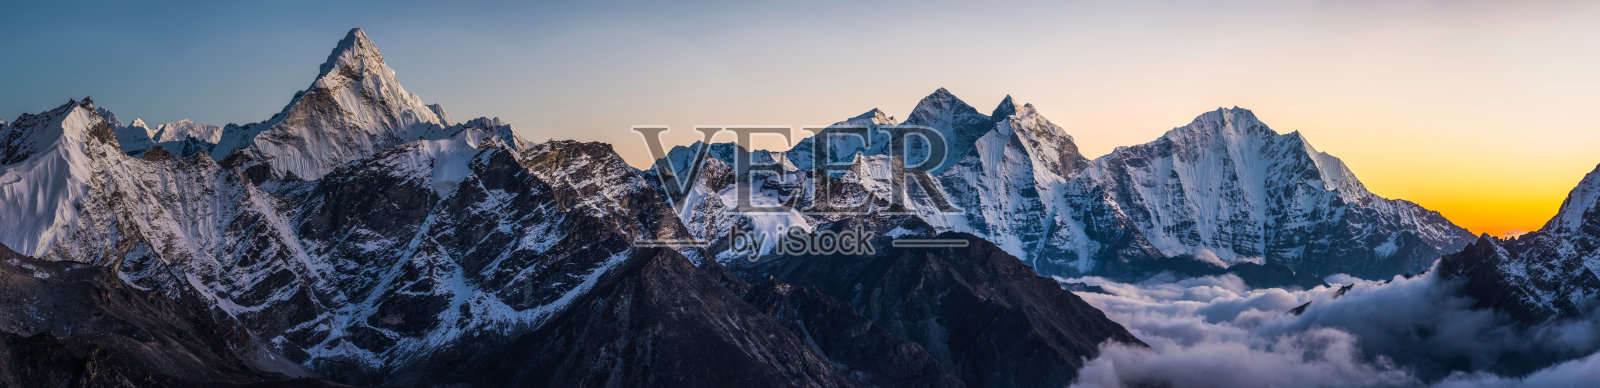 alpenlow在戏剧性的山峰上全景阿玛达布拉姆喜马拉雅山尼泊尔照片摄影图片